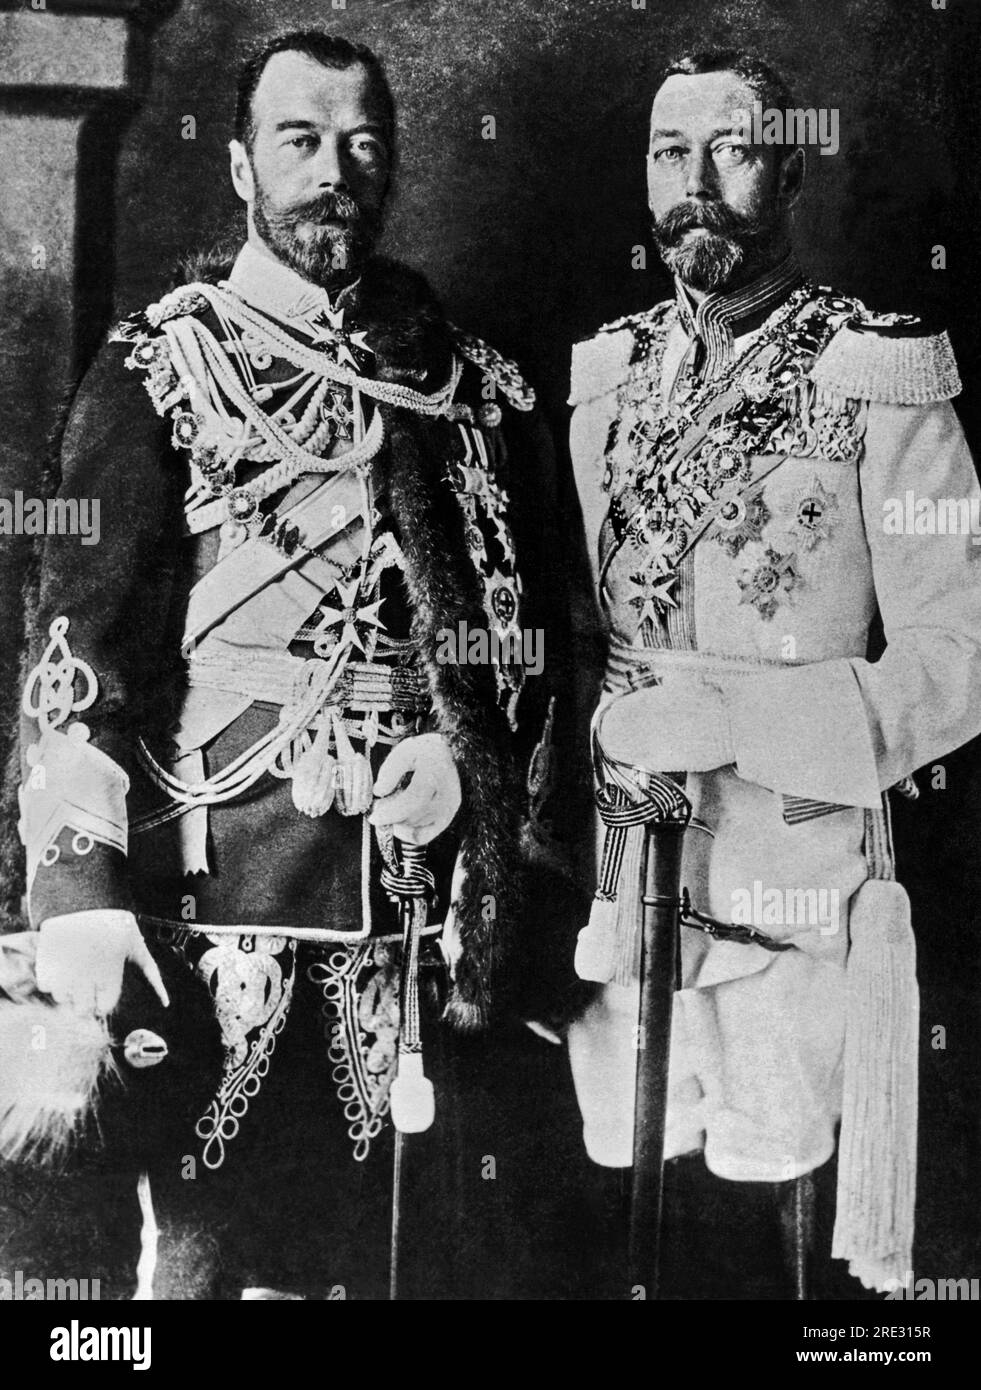 Inghilterra: 1915 circa qui ci sono due cugini, lo zar Nicola II di Russia, a sinistra, che indossa un'uniforme inglese, e il re Giorgio V d'Inghilterra, nei reggimenti russi. Si trattava di una pittoresca cortesia osservata tra i governanti reali dell'epoca quando si visitavano l'un l'altro. Foto Stock